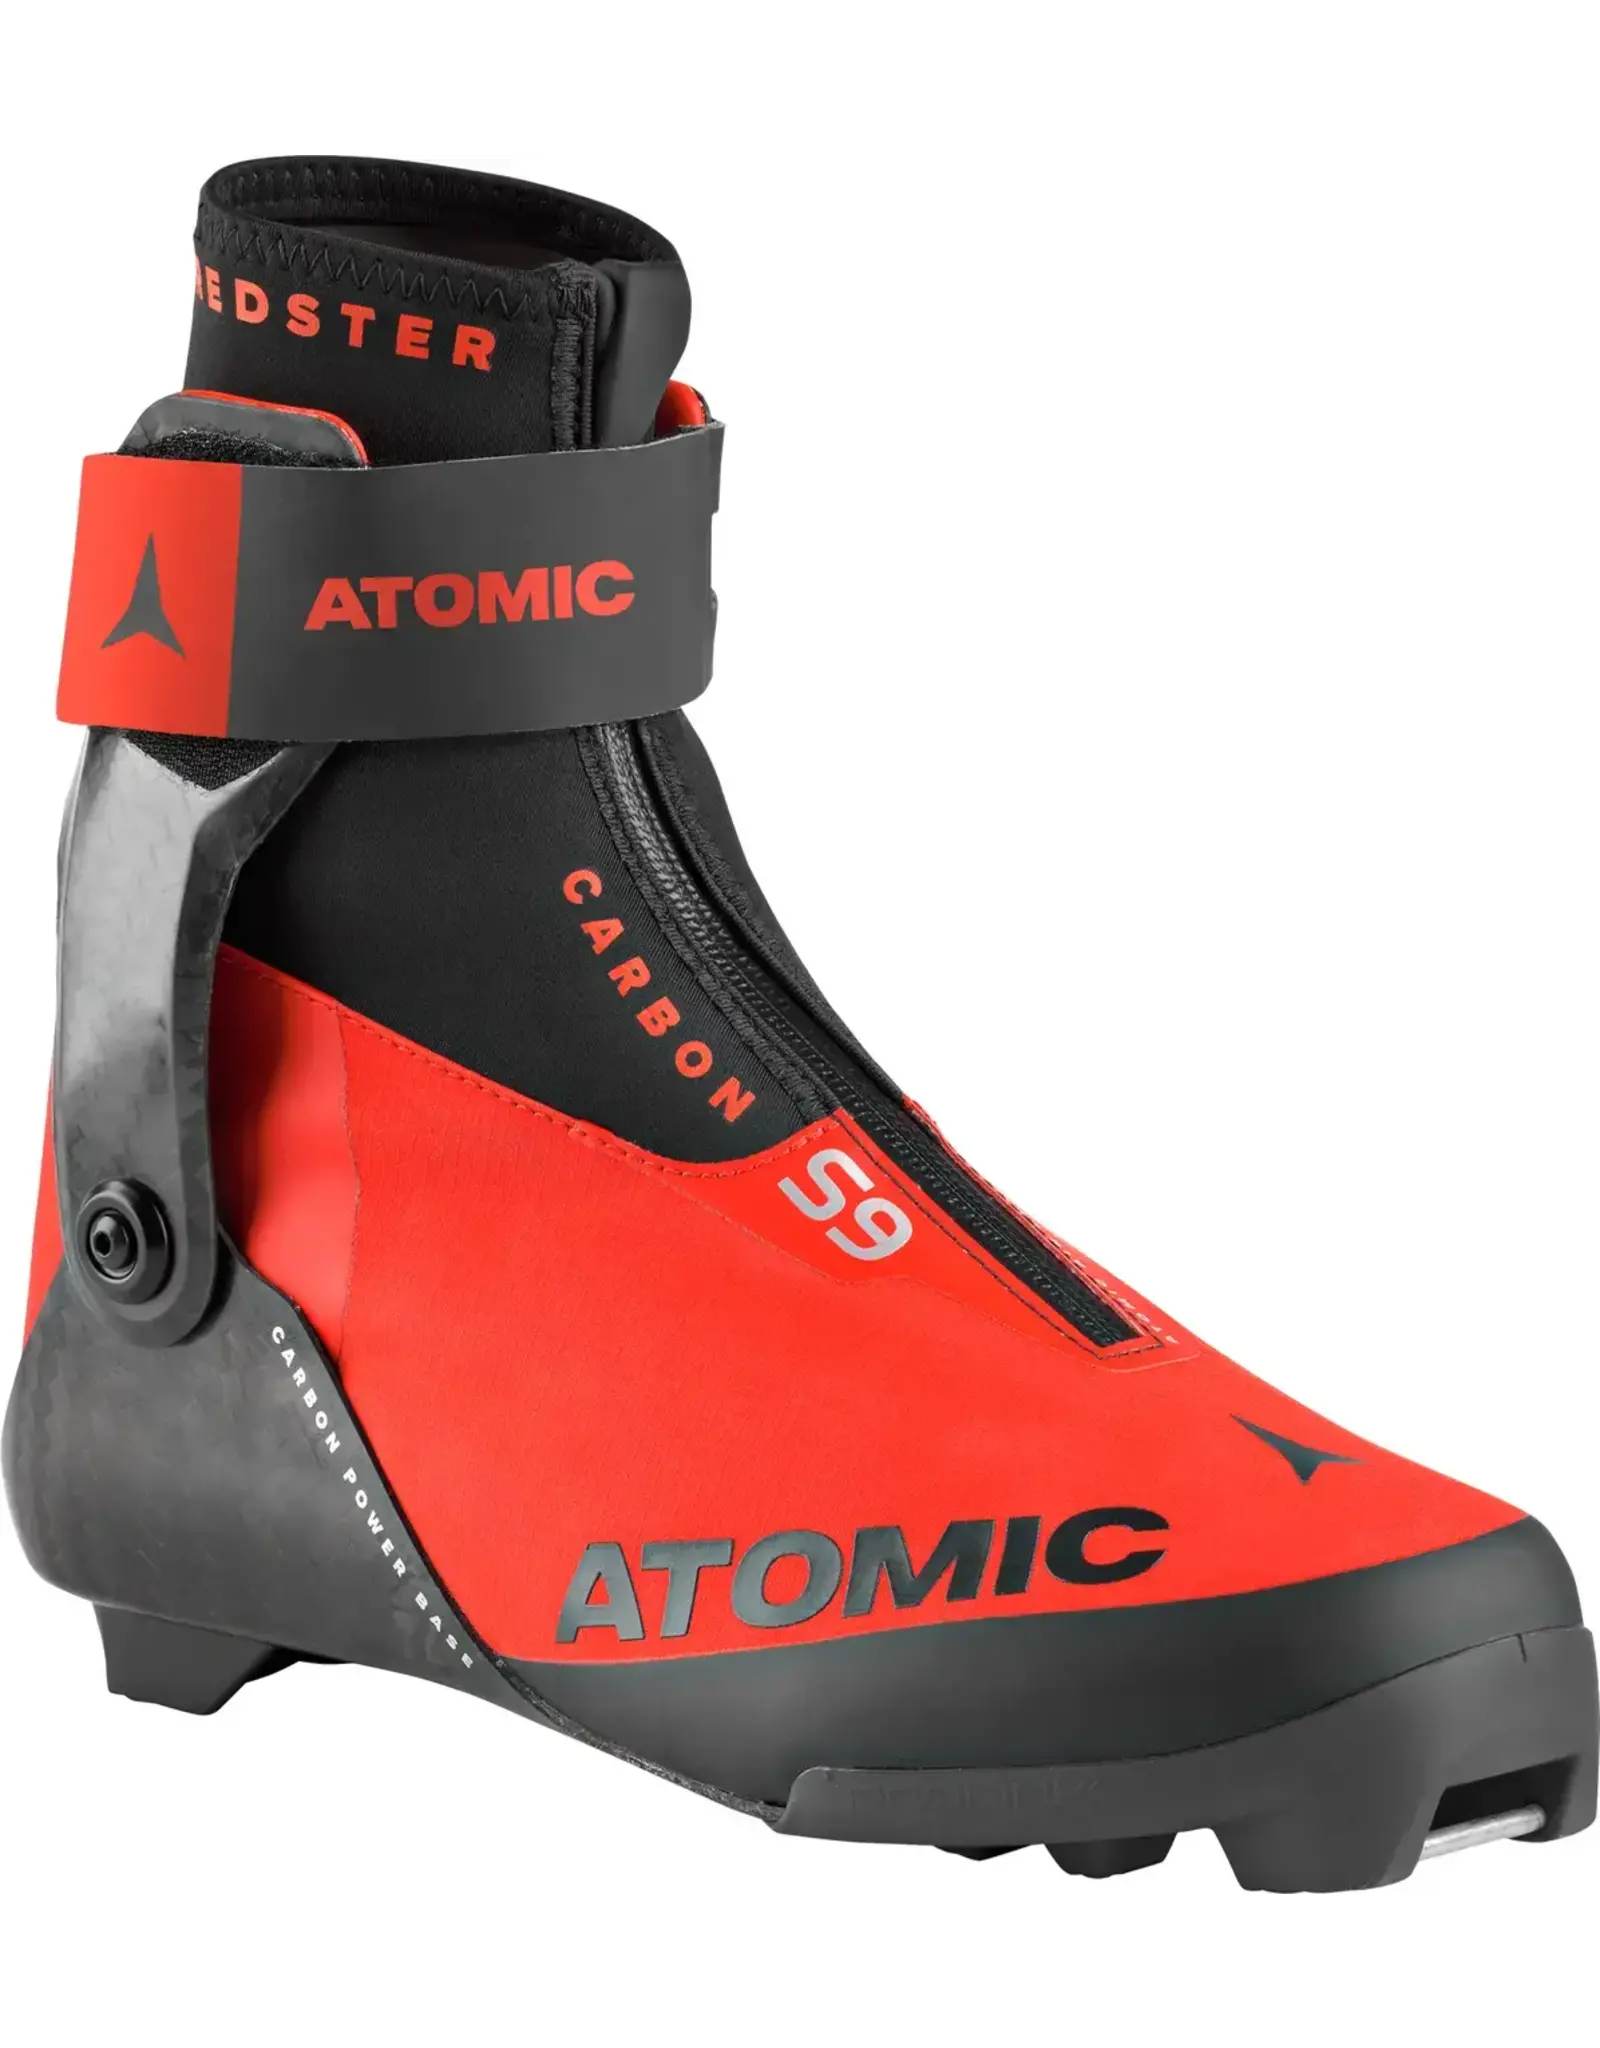 Atomic Atomic Redster S9 Carbon Boot